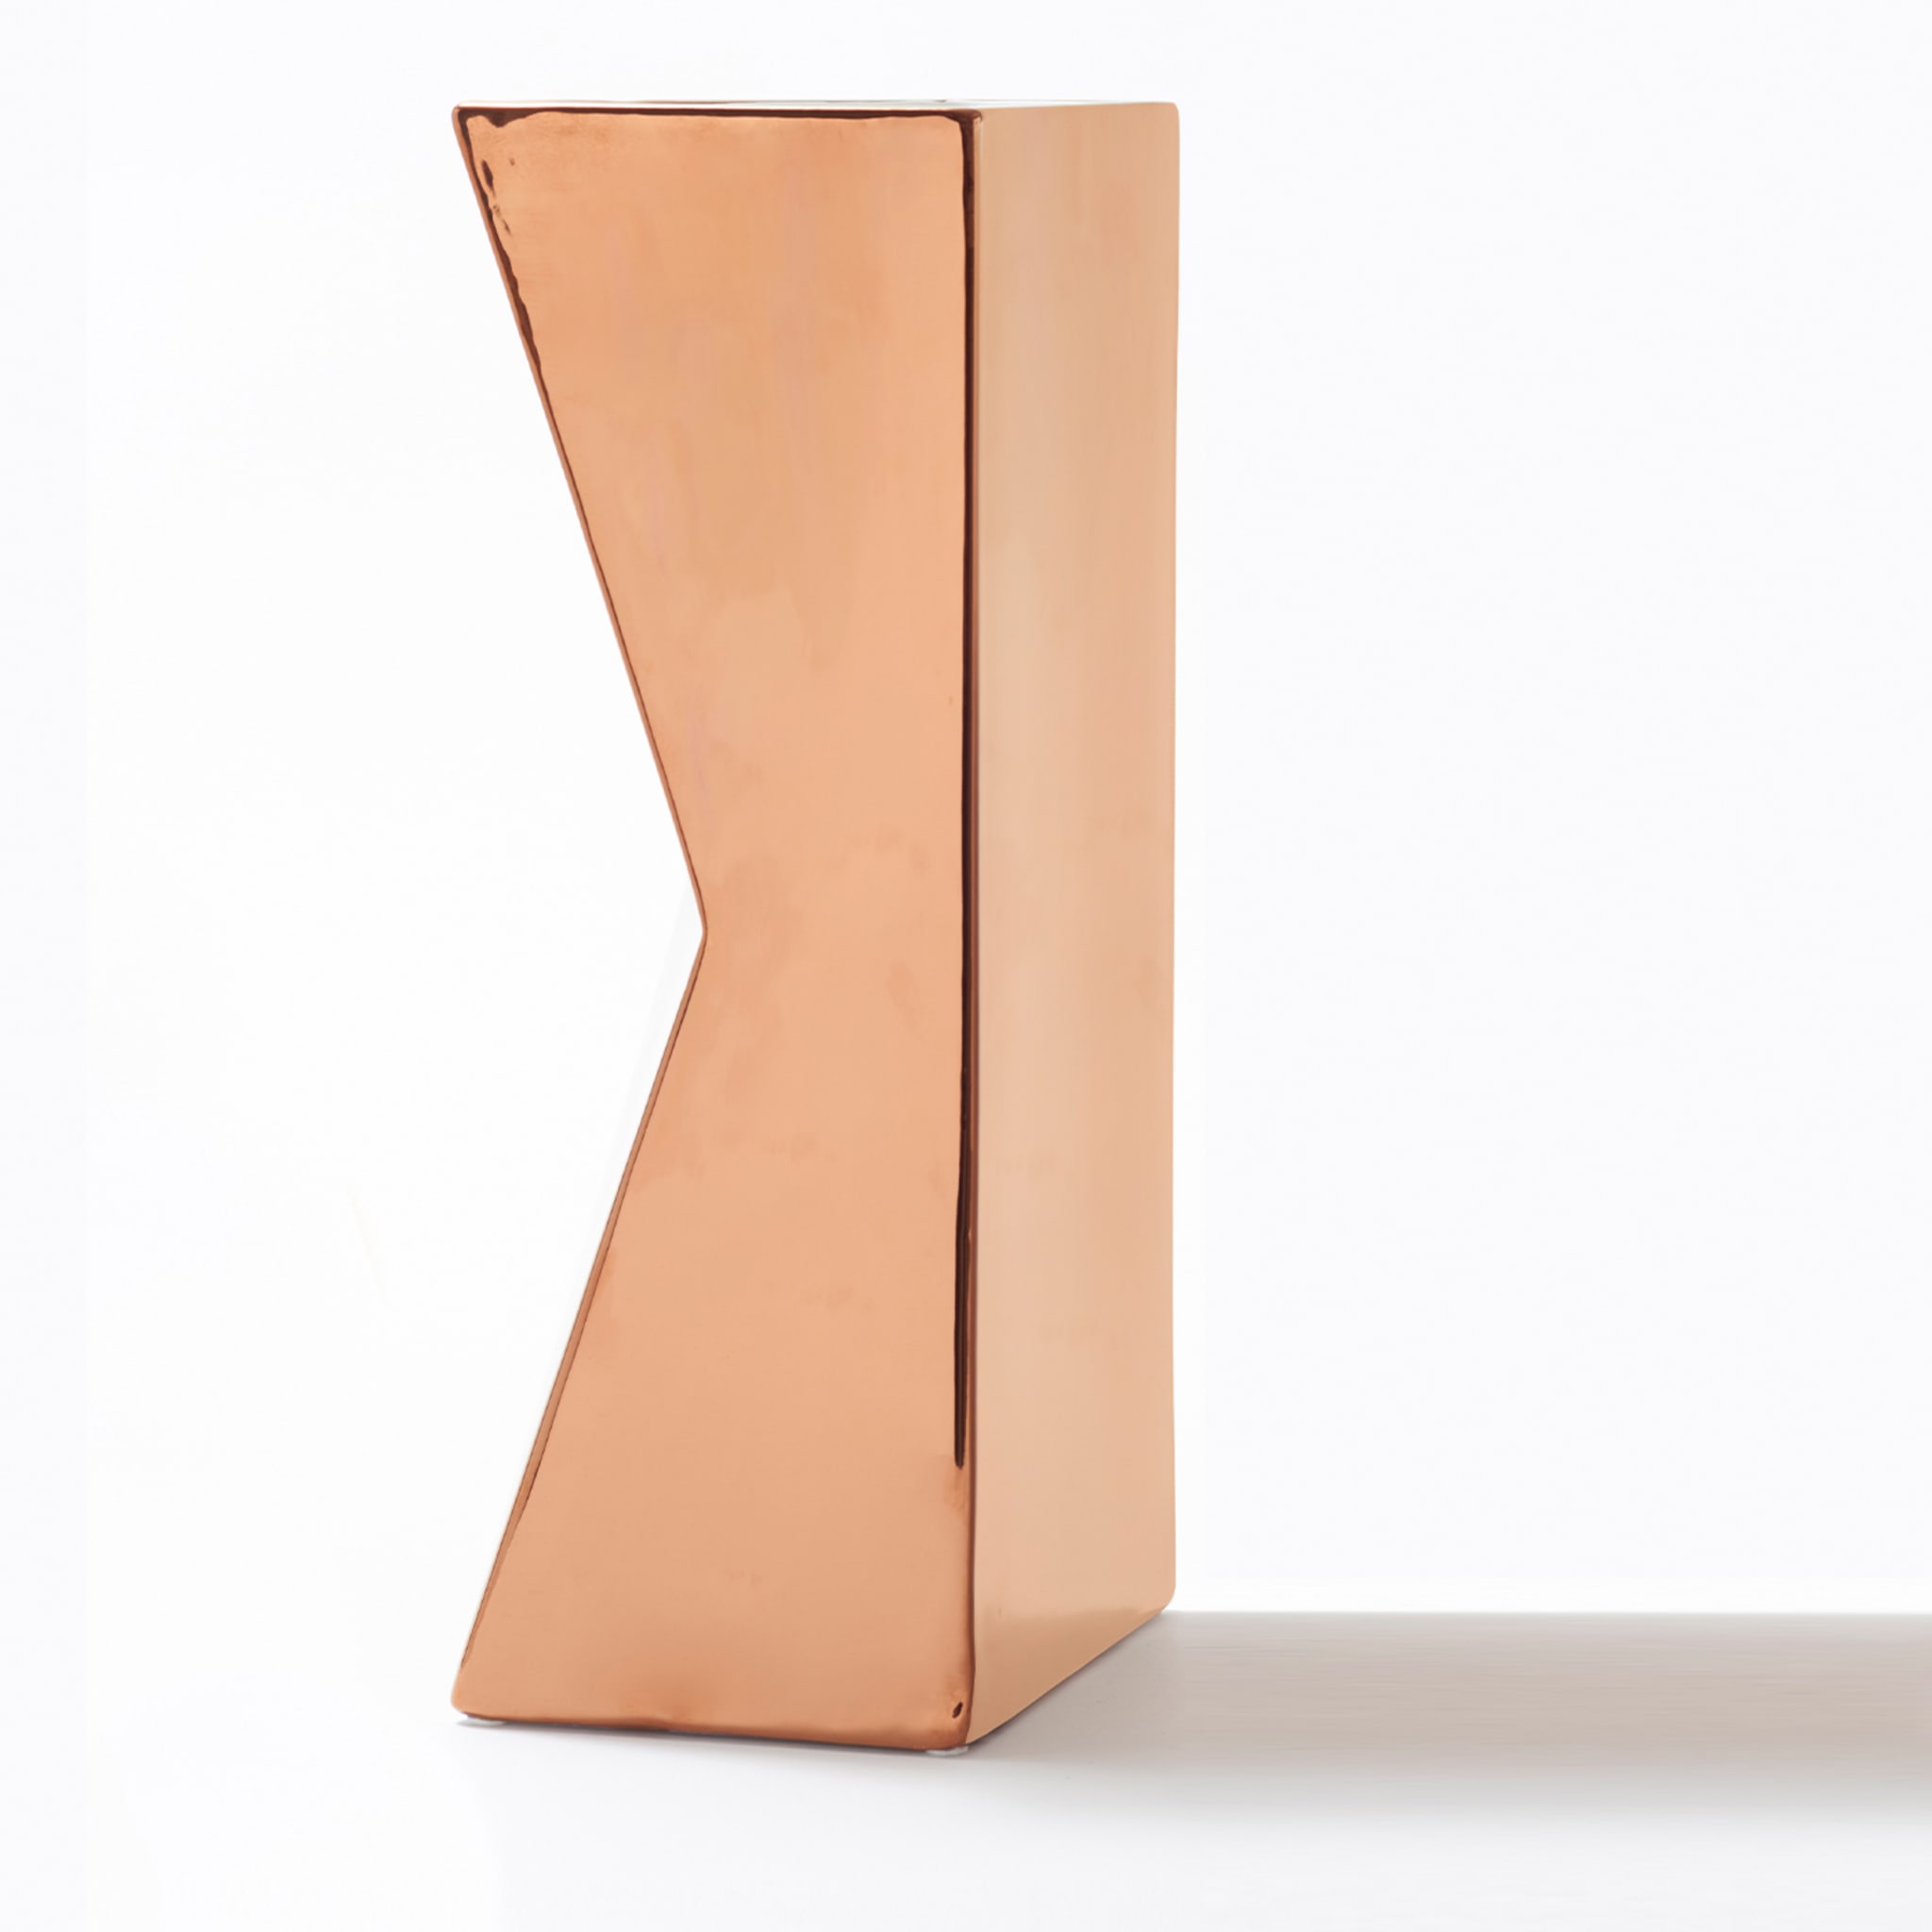 Verso Copper Vase by Antonio Saporito - Alternative view 2